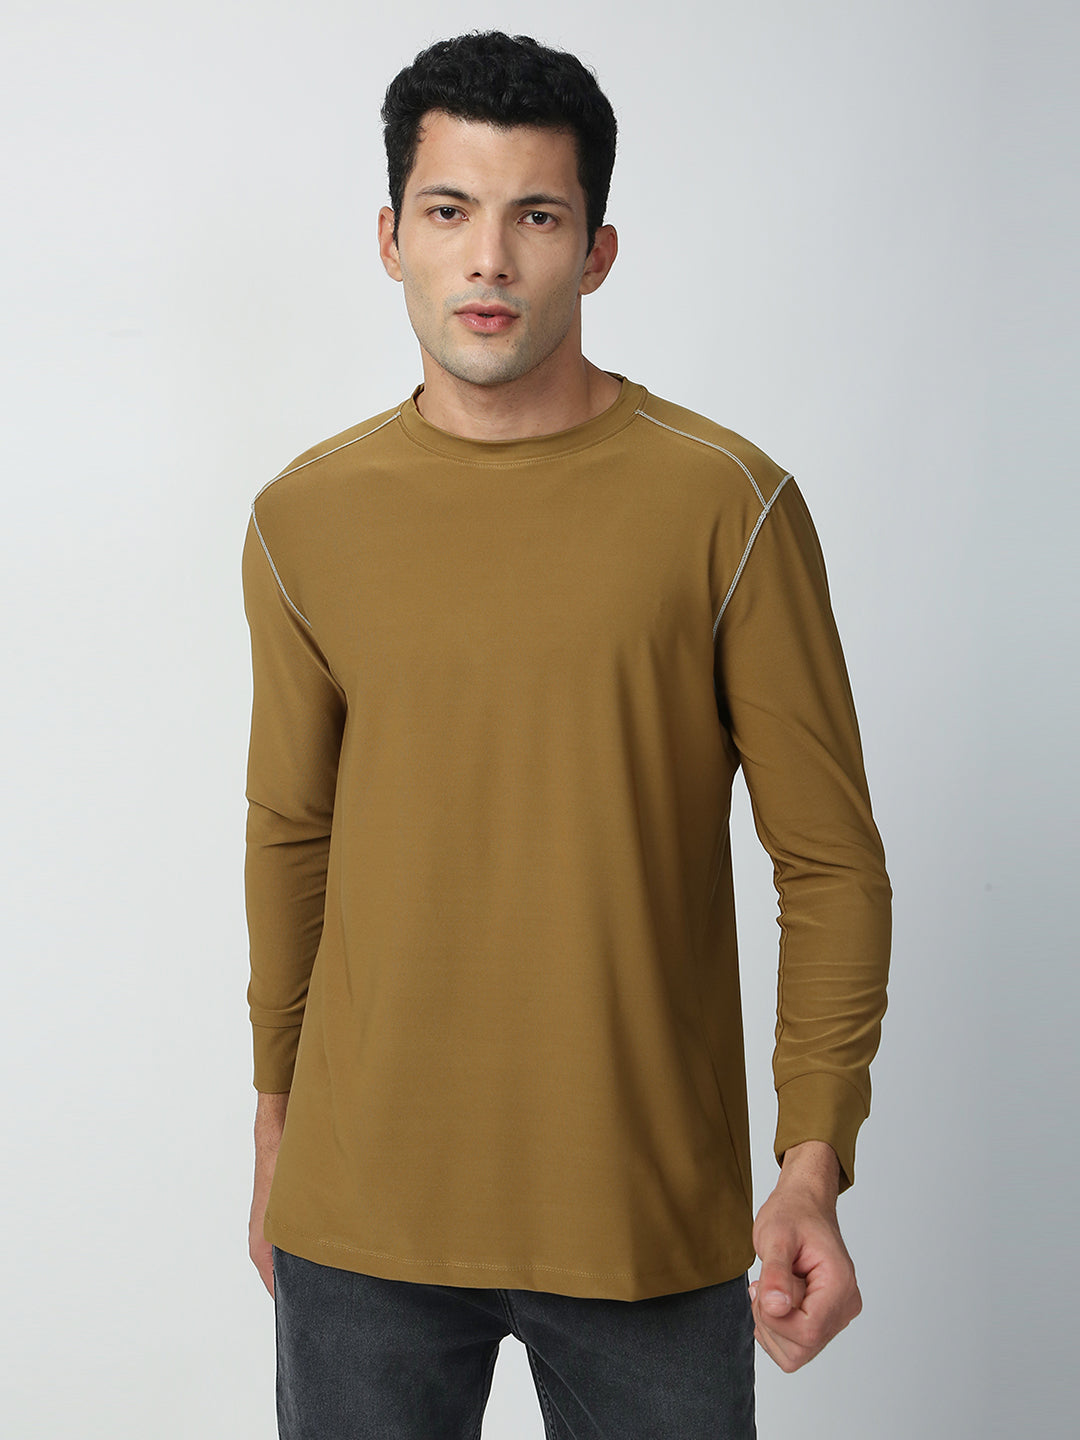 Buy Blamblack Men's Olive Color GYM Wear Plain T-shirt